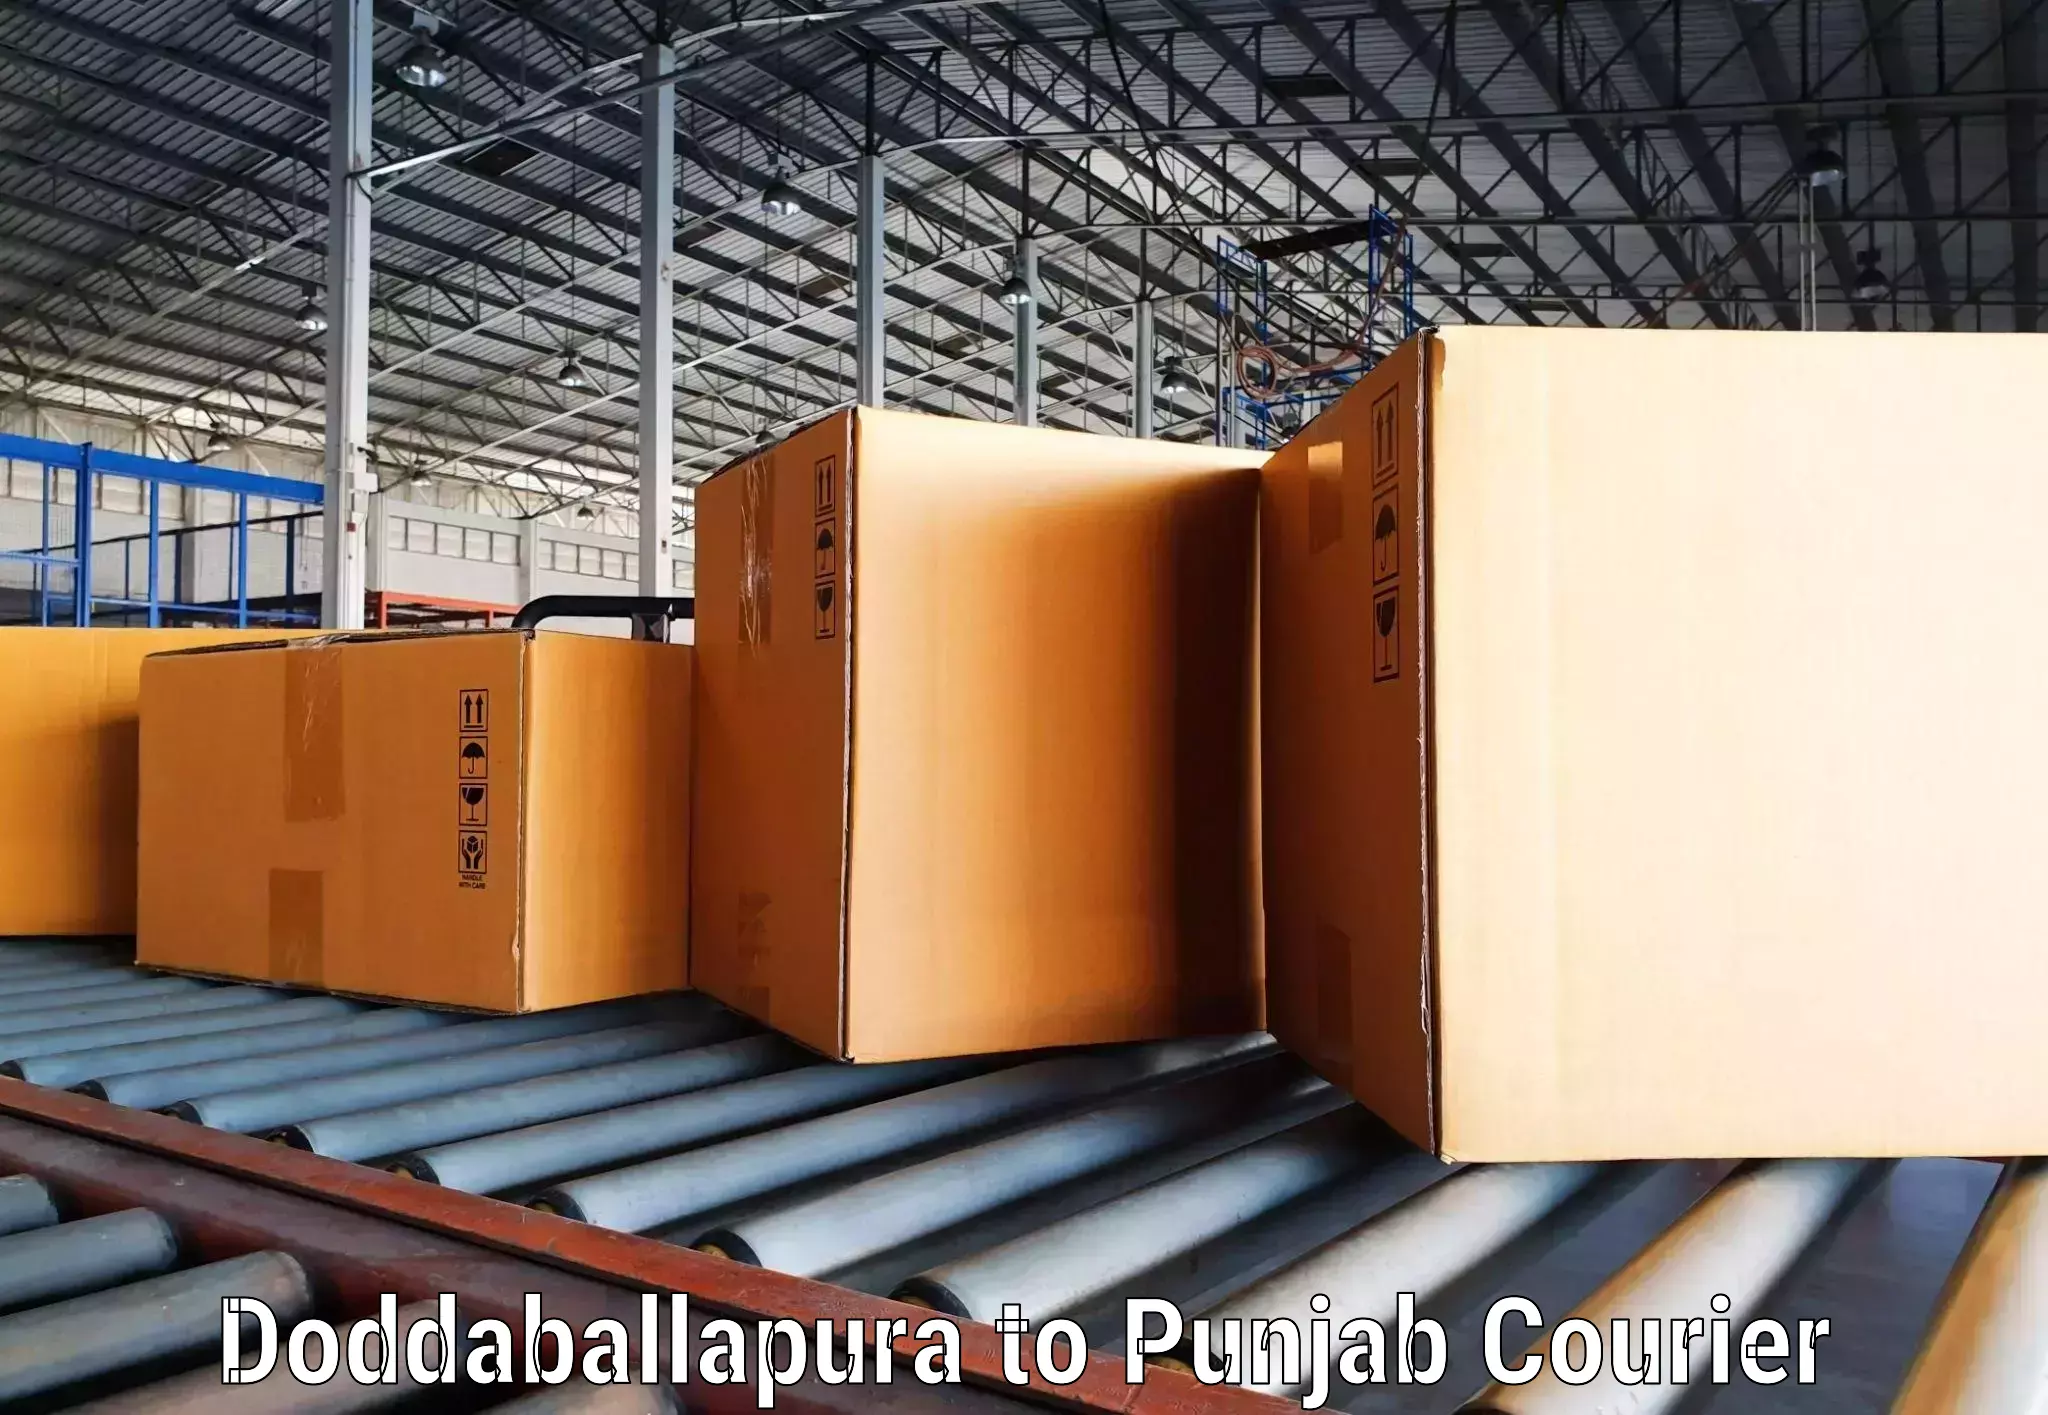 Courier tracking online Doddaballapura to Central University of Punjab Bathinda